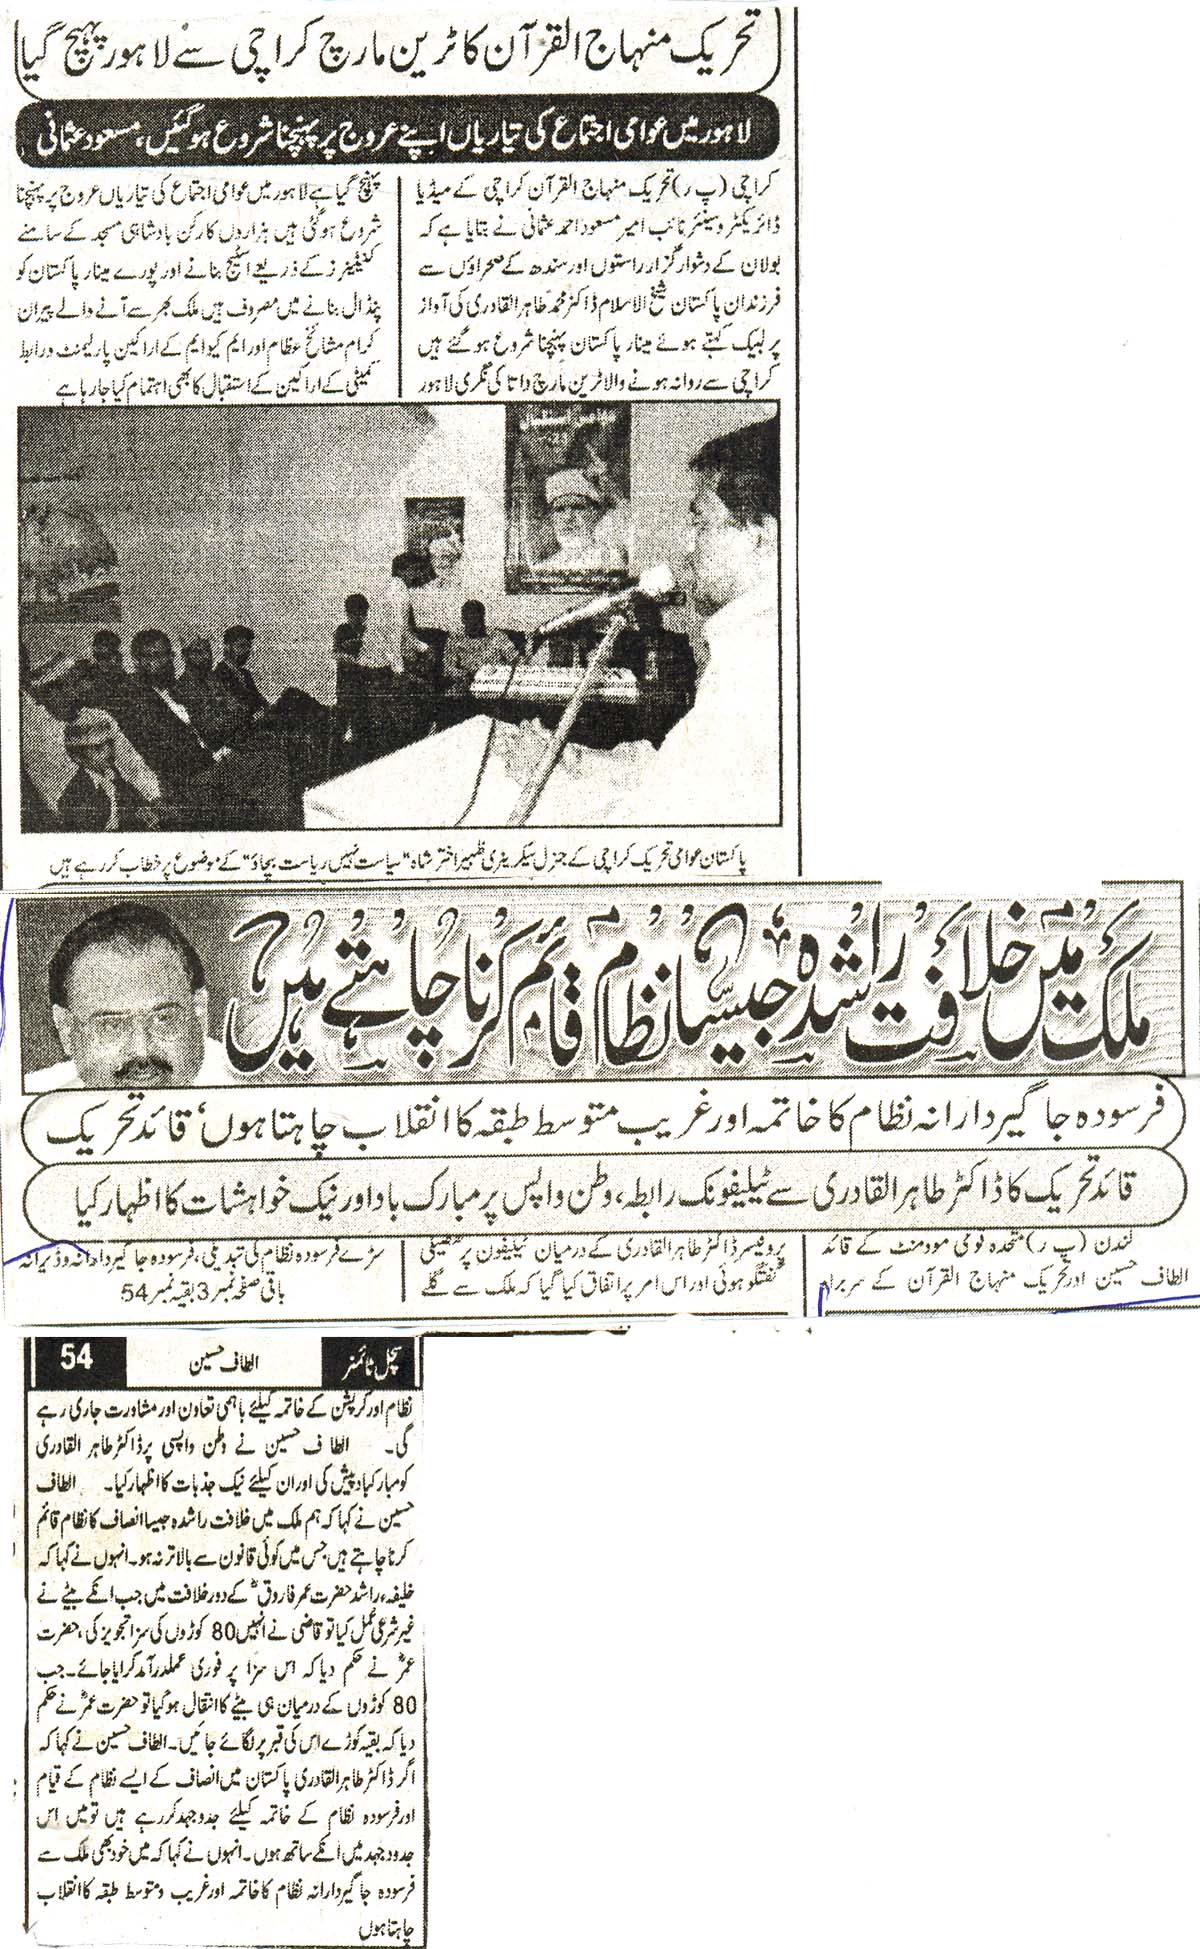 Minhaj-ul-Quran  Print Media Coveragedaily sachal times page 2